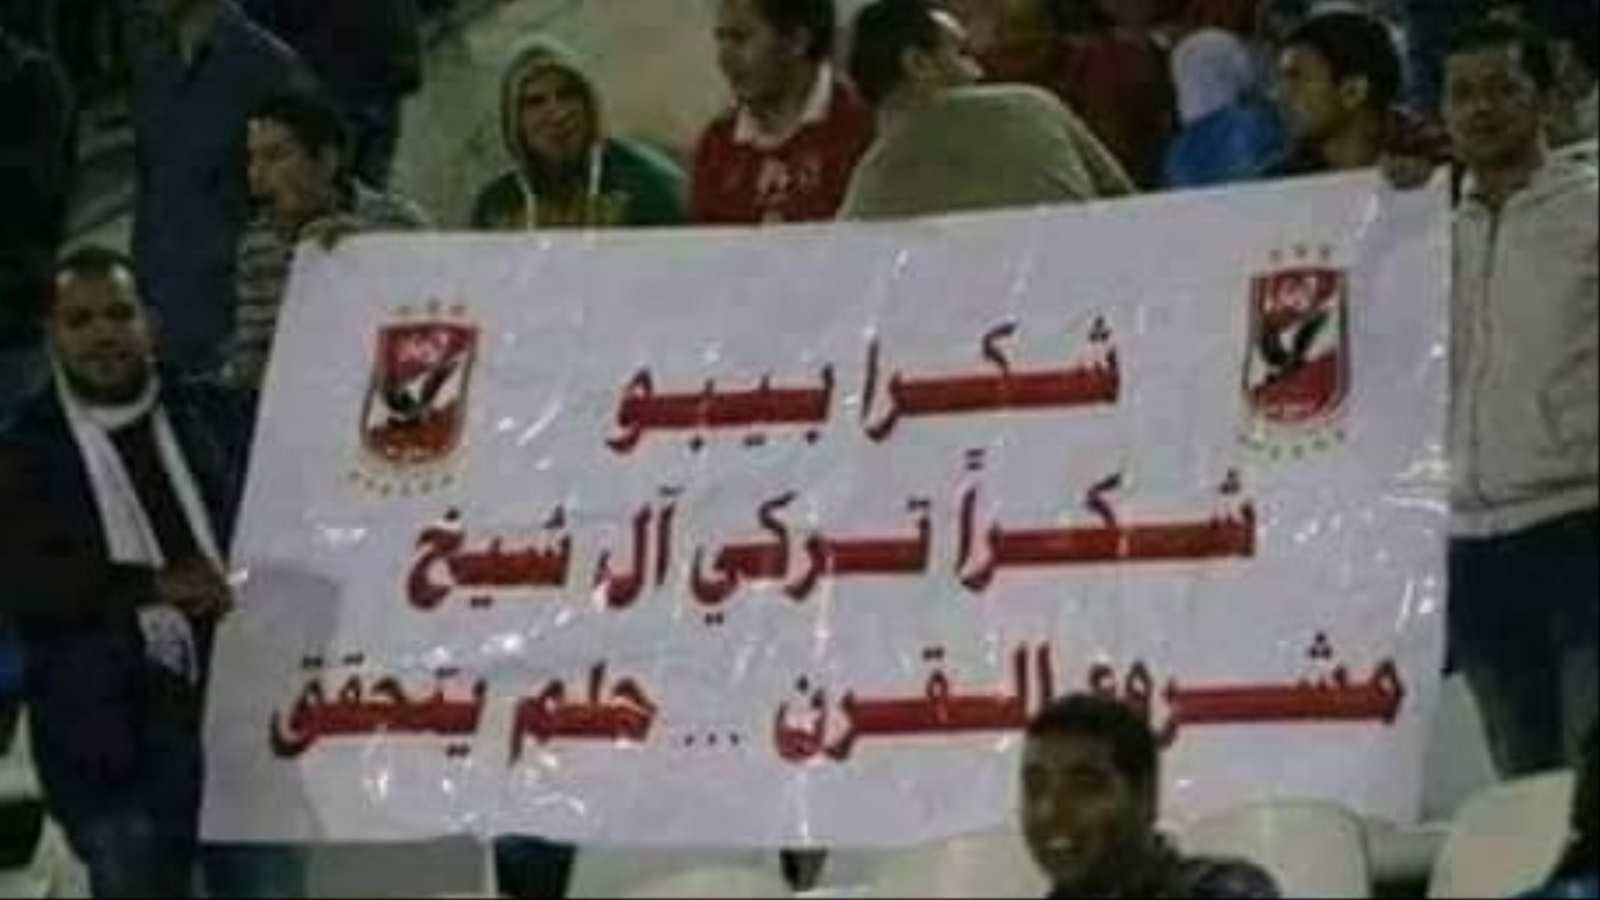 لافتة يرفعها مشجع للأهلي تشكر آل الشيخ على دعمه لمشروع إنشاء ملعب خاص بالنادي (مواقع التواصل الاجتماعي)